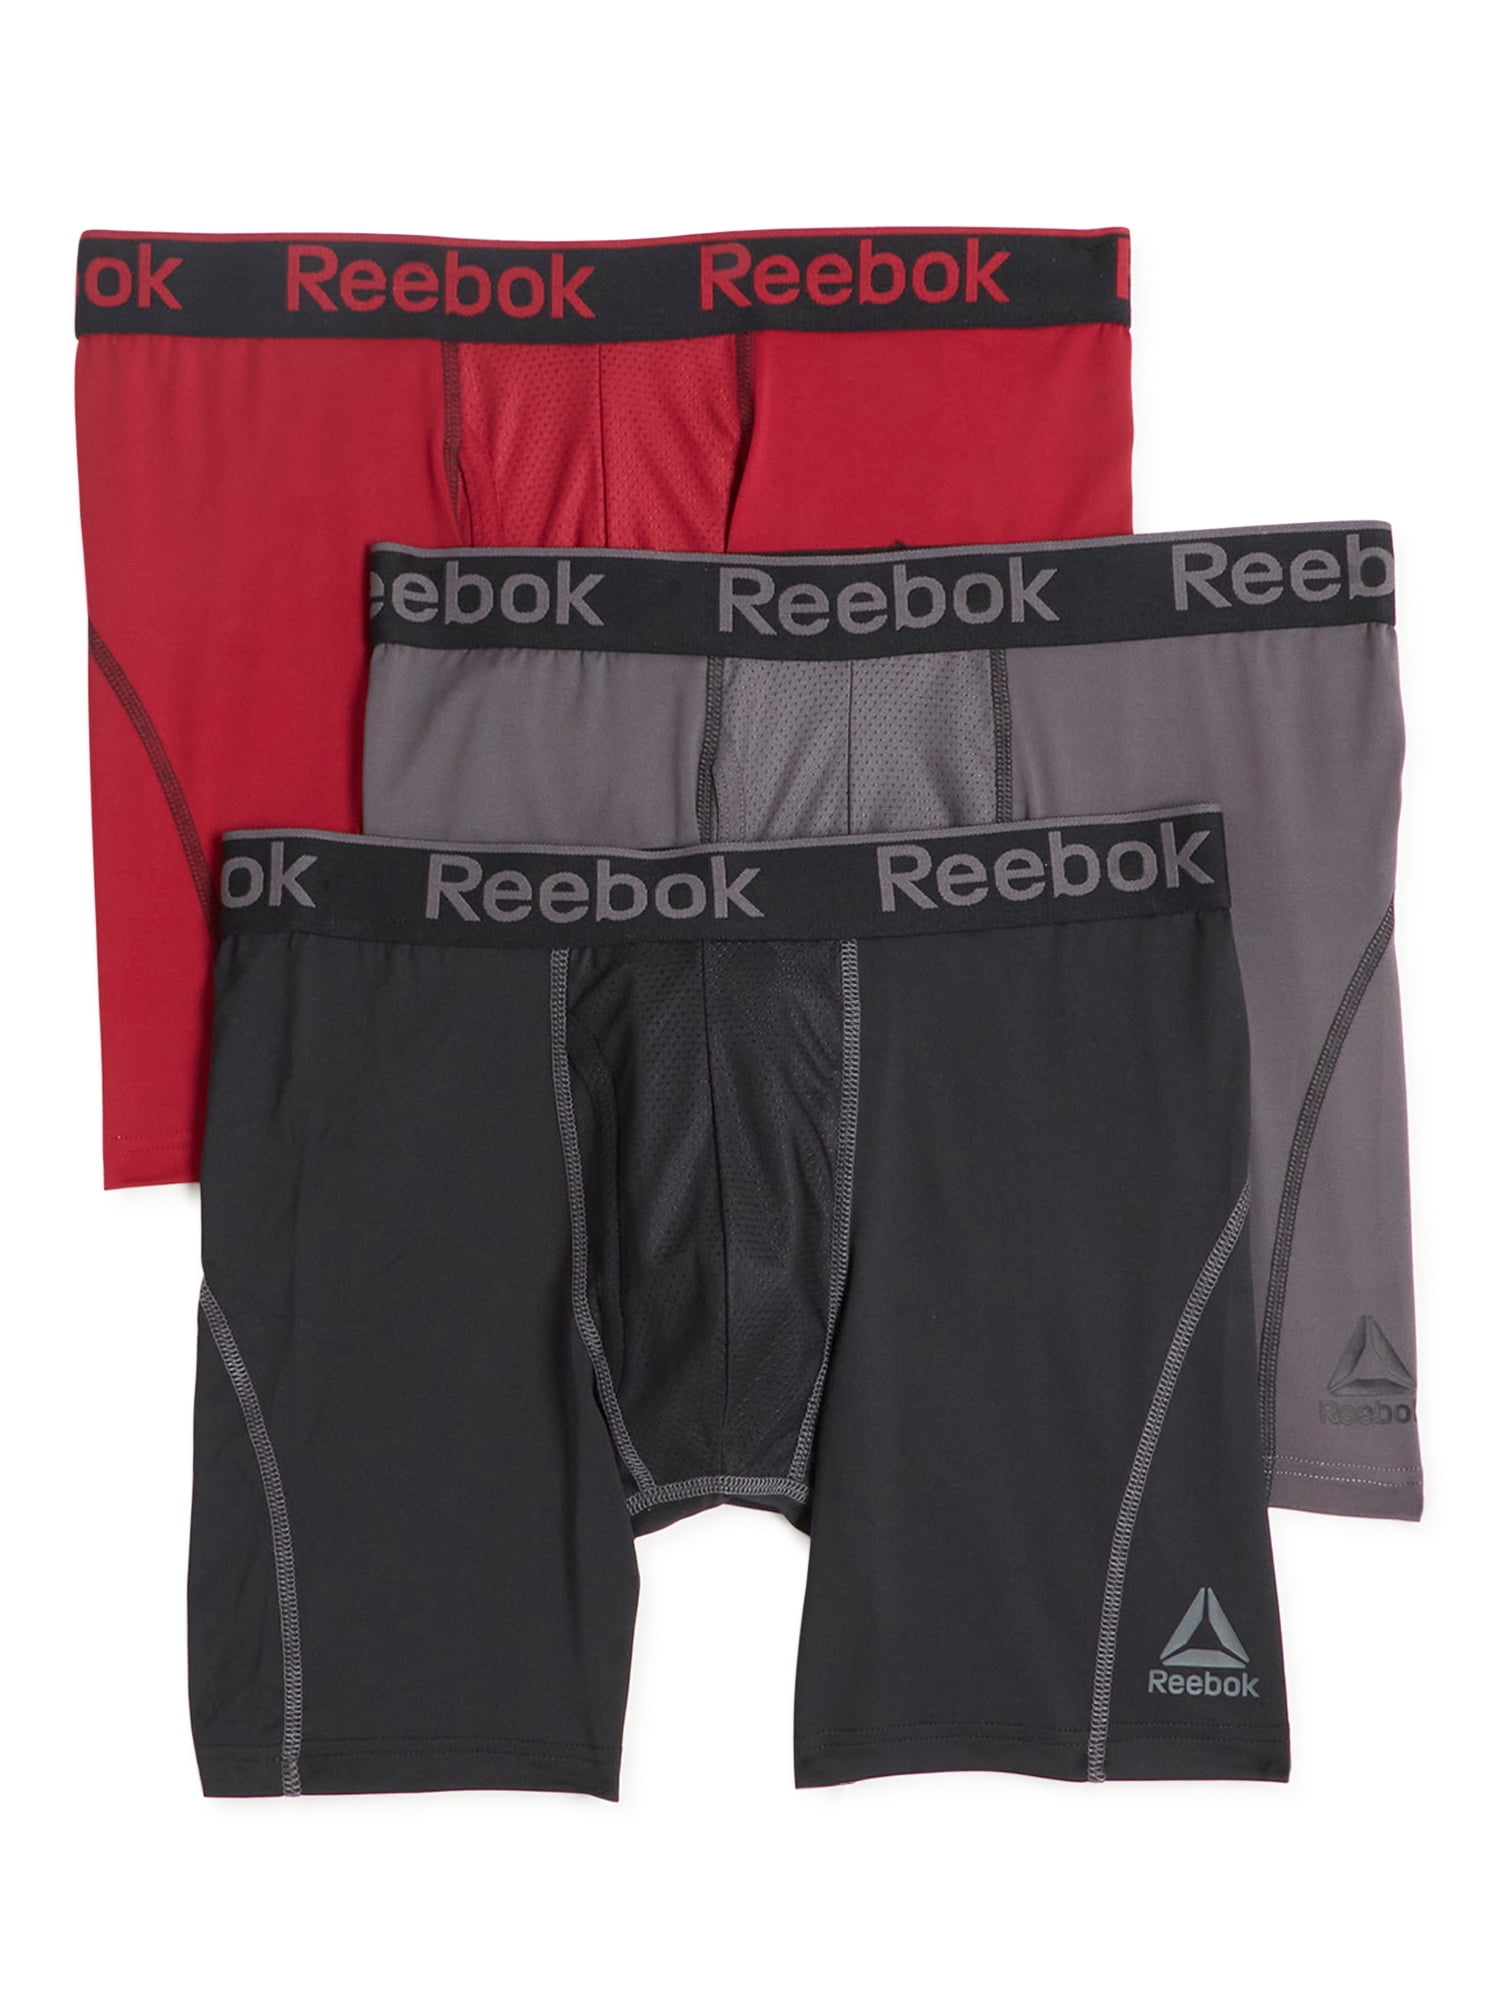 Performance Boxer Briefs 8 Pack Reebok Men's Underwear